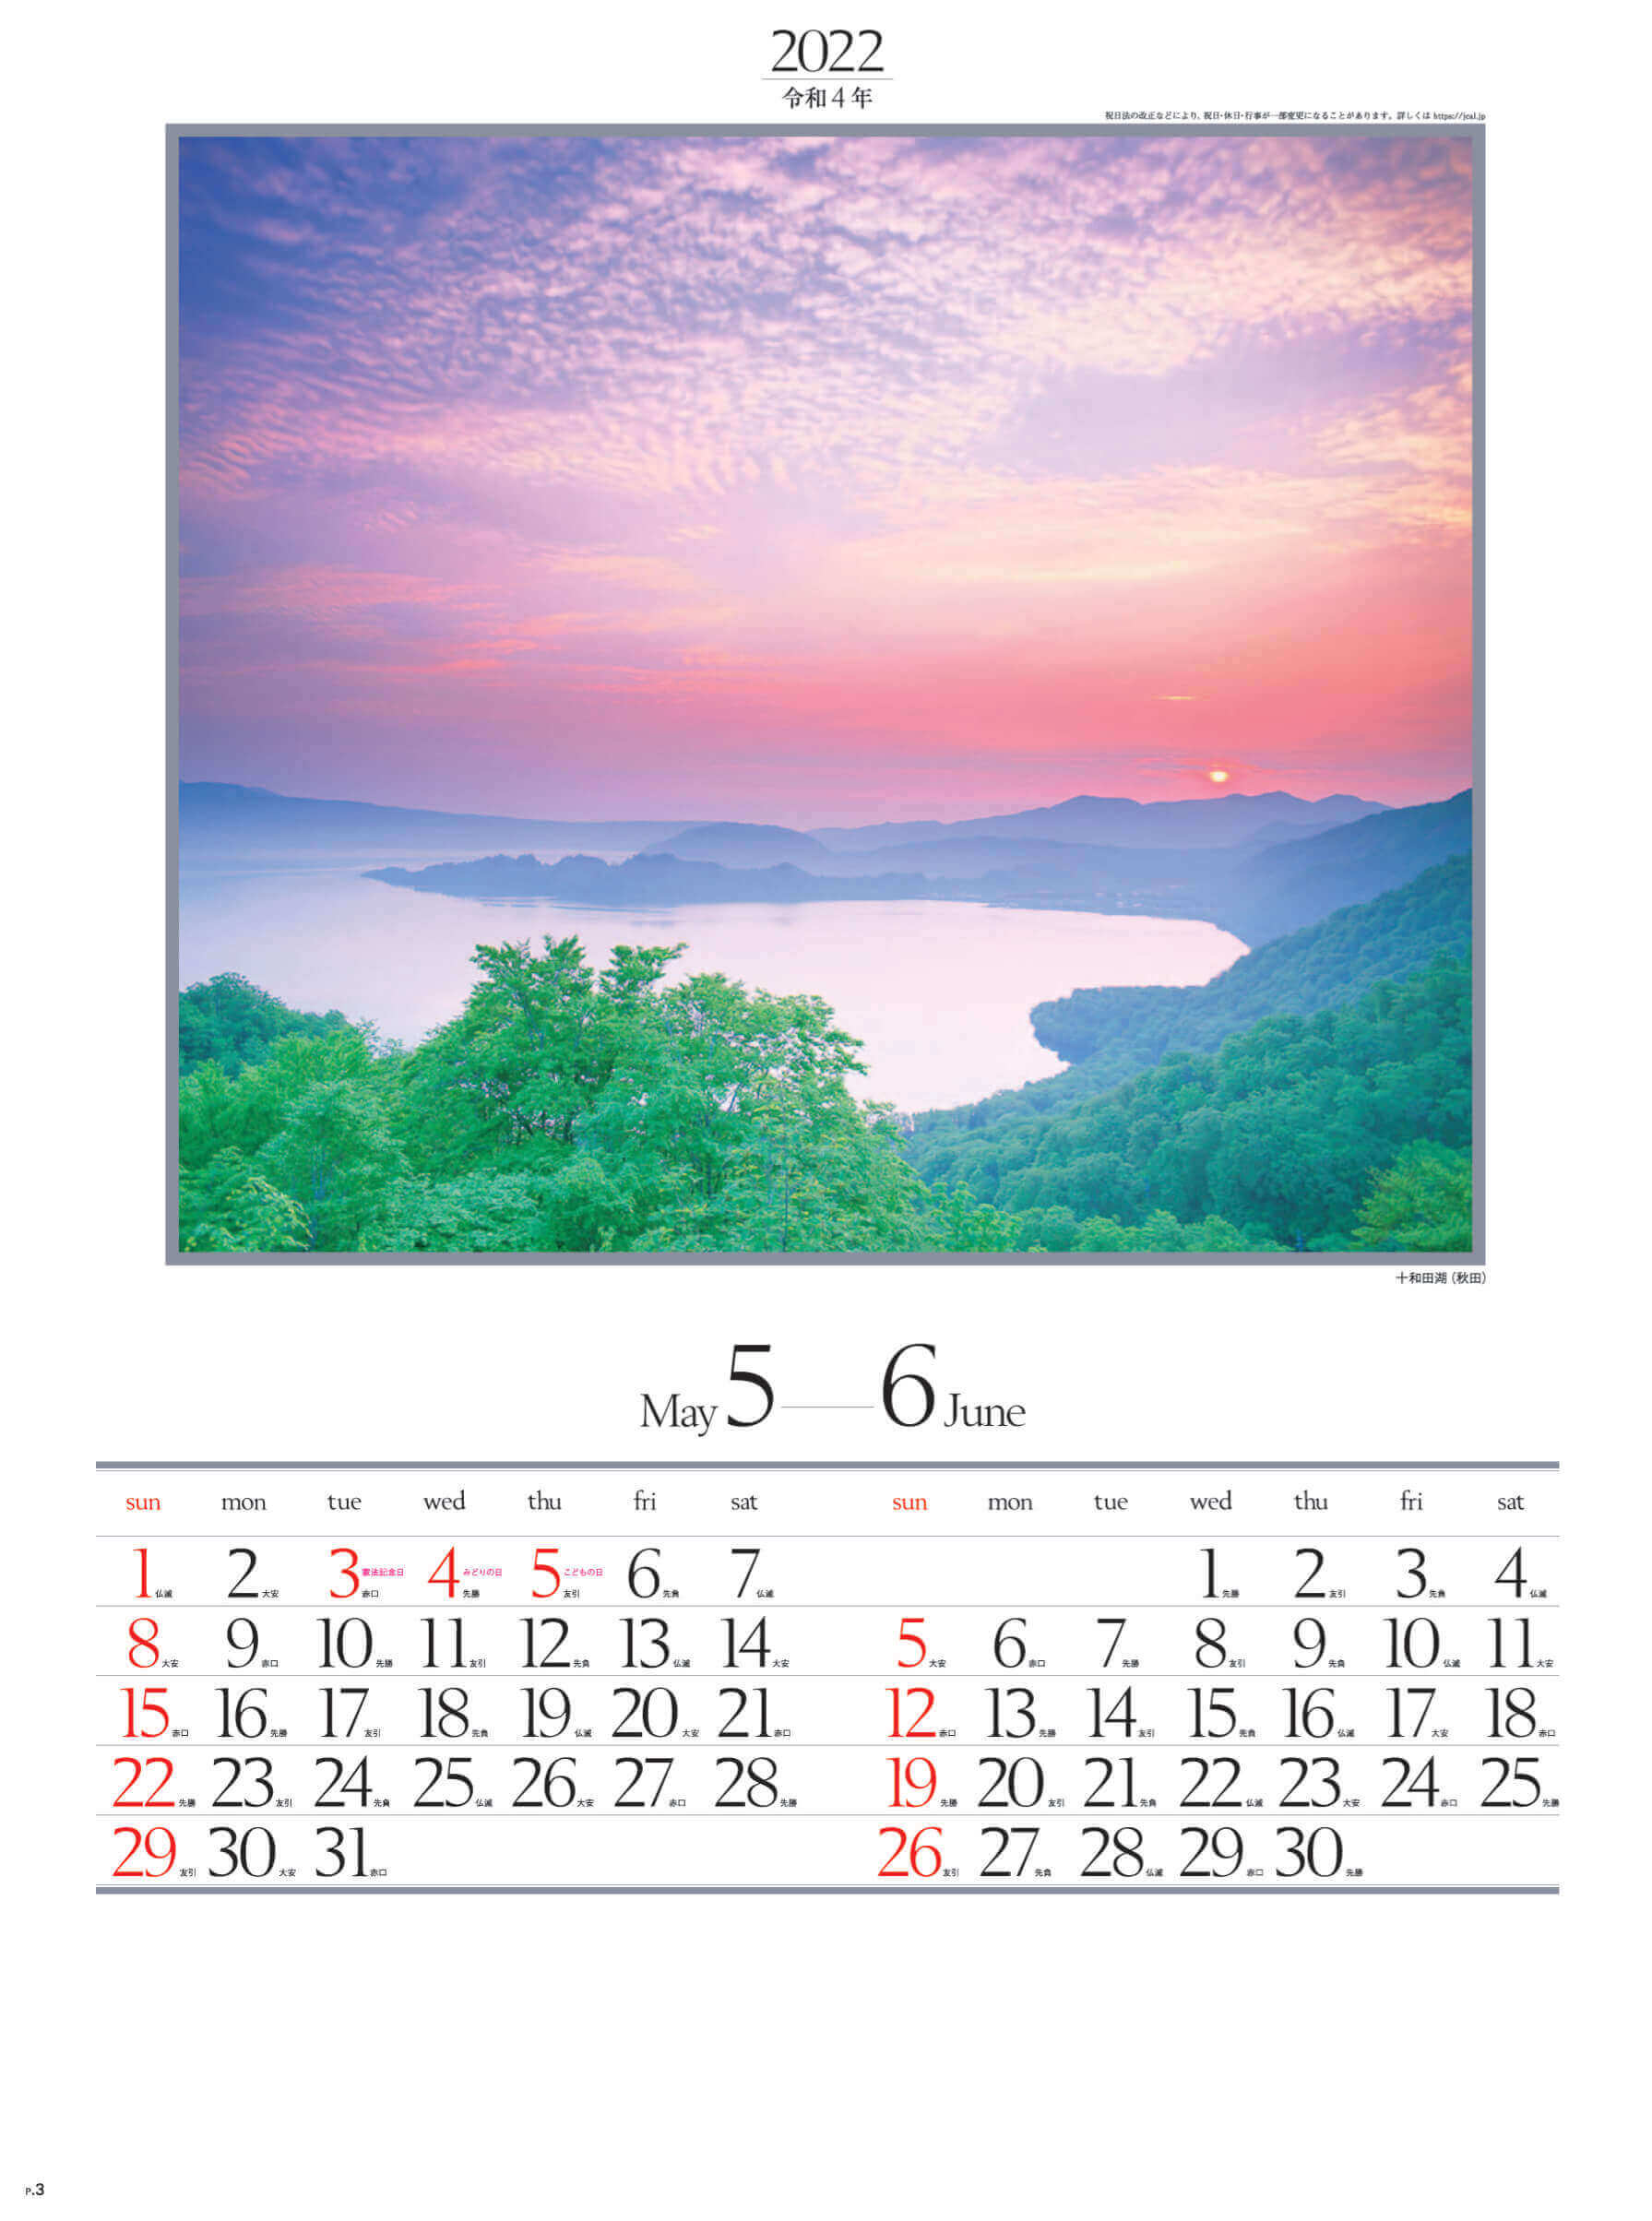 5-6月 十和田湖(秋田) 四季六彩 2022年カレンダーの画像